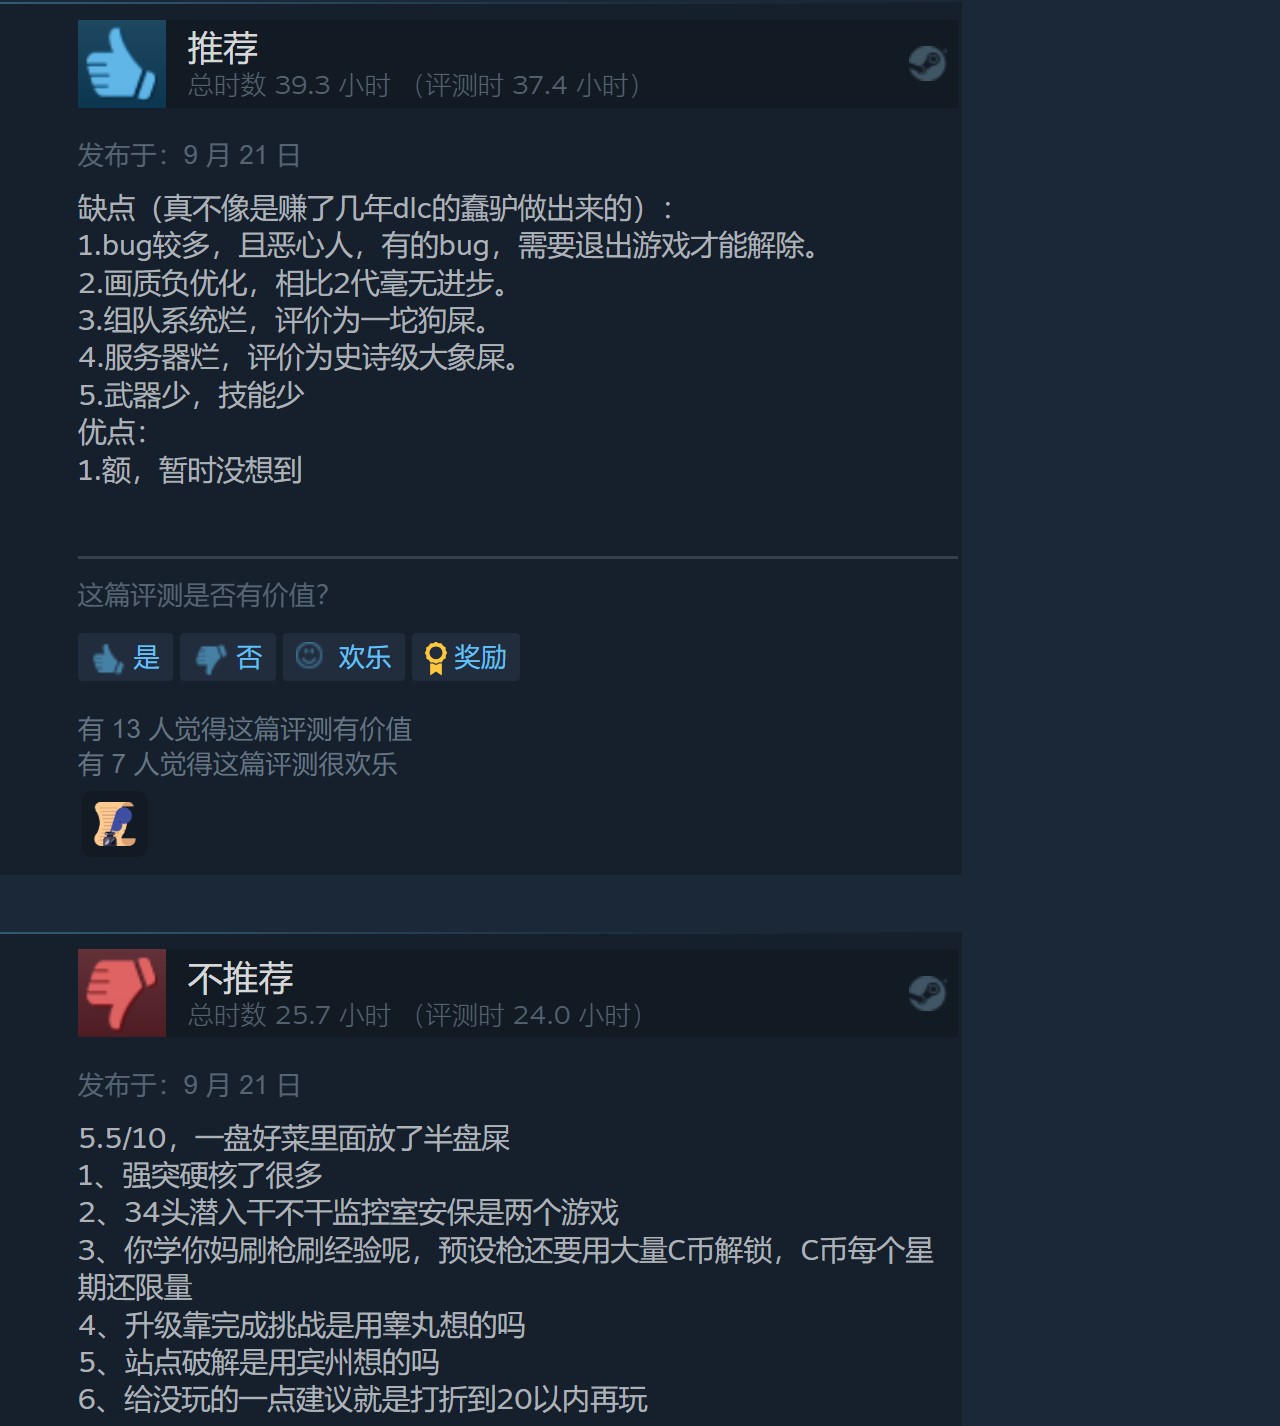 《收获日3》现已推出 Steam中文评价多半差评